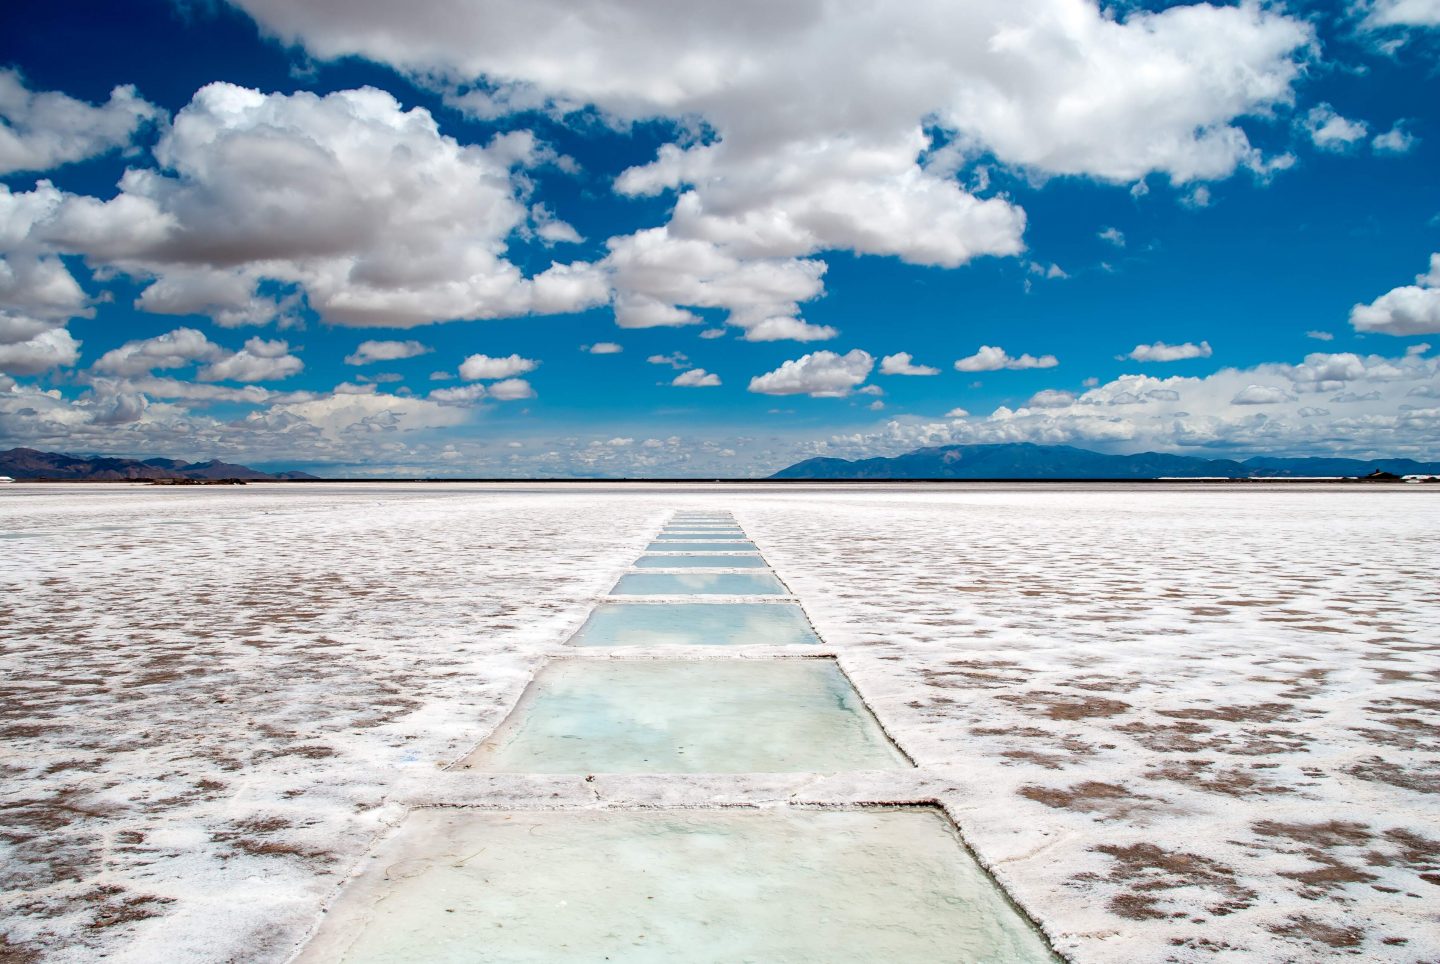 Discover the awe-inspiring salt flats of Salta